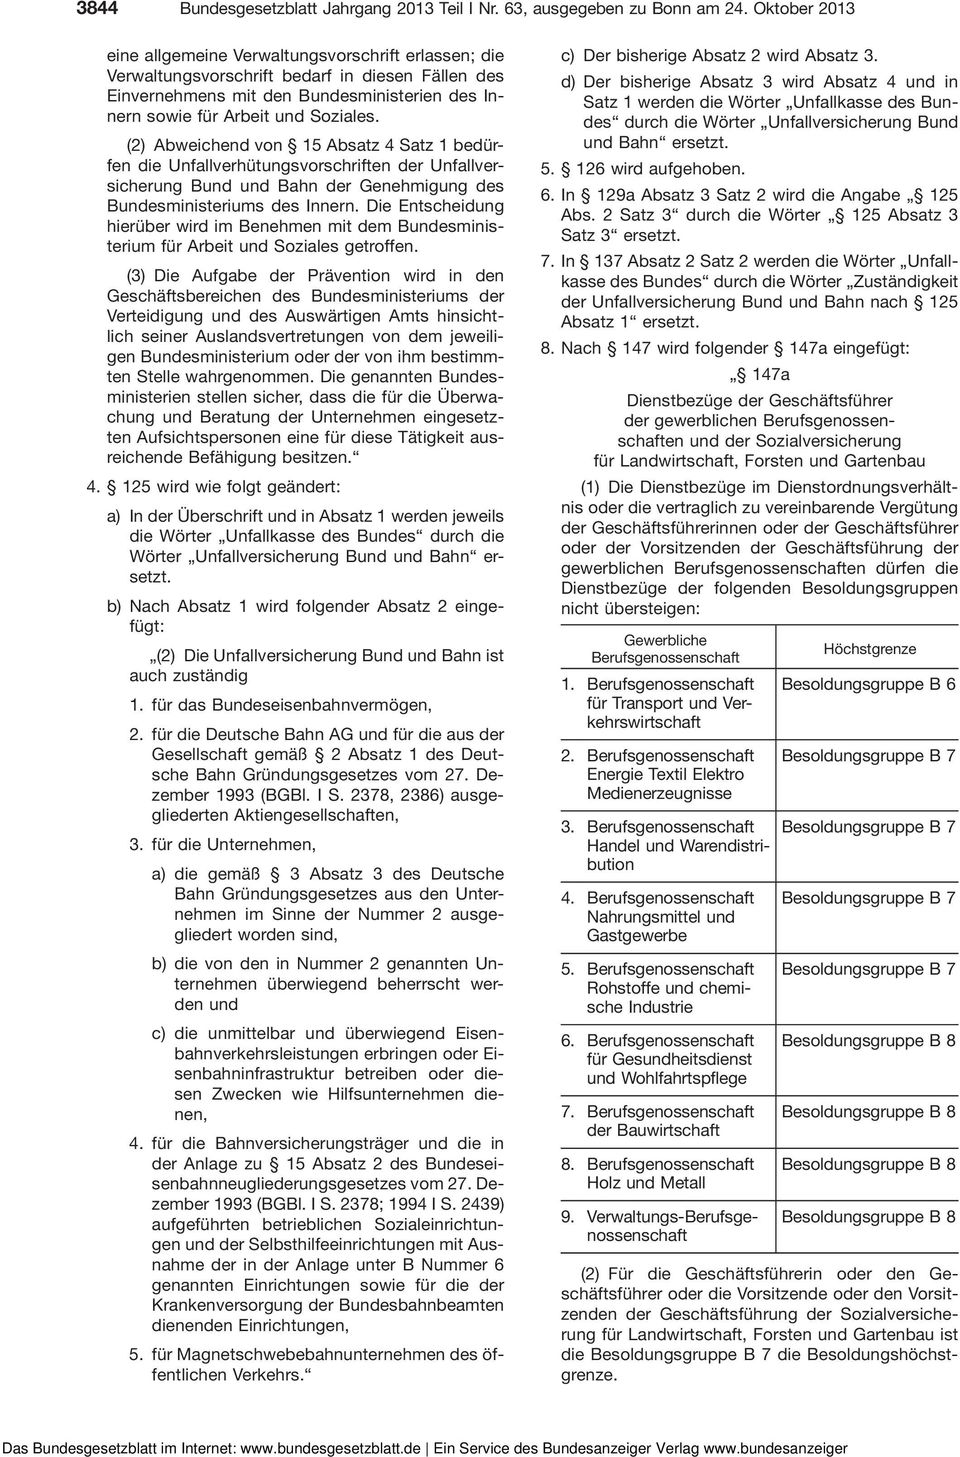 (2) Abweichend von 15 Absatz 4 Satz 1 bedürfen die Unfallverhütungsvorschriften der Unfallversicherung Bund und Bahn der Genehmigung des Bundesministeriums des Innern.